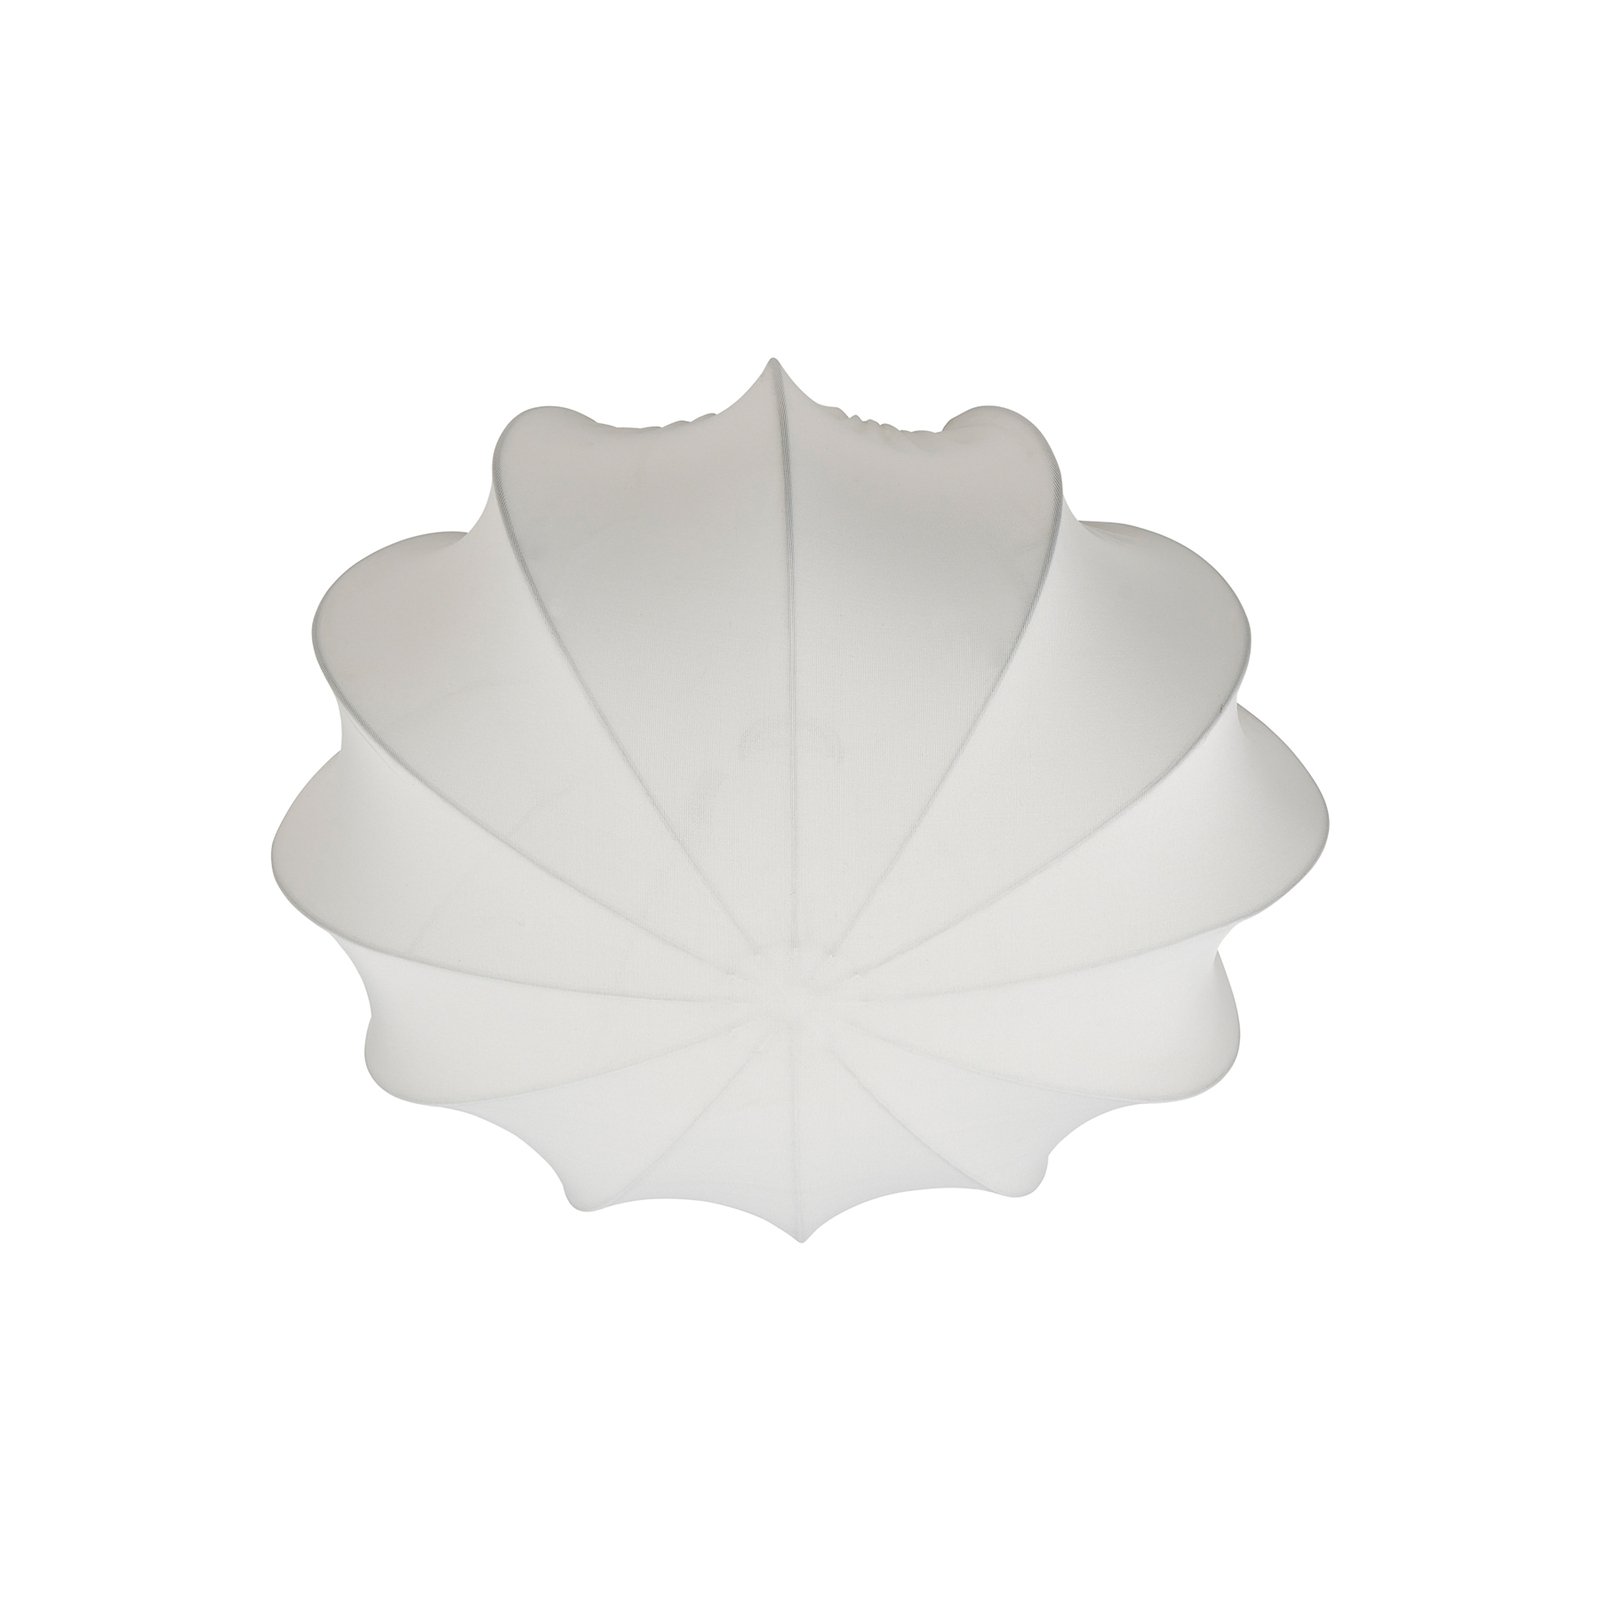 Stropné svietidlo Aeron, textilné, biele, priemer 40 cm